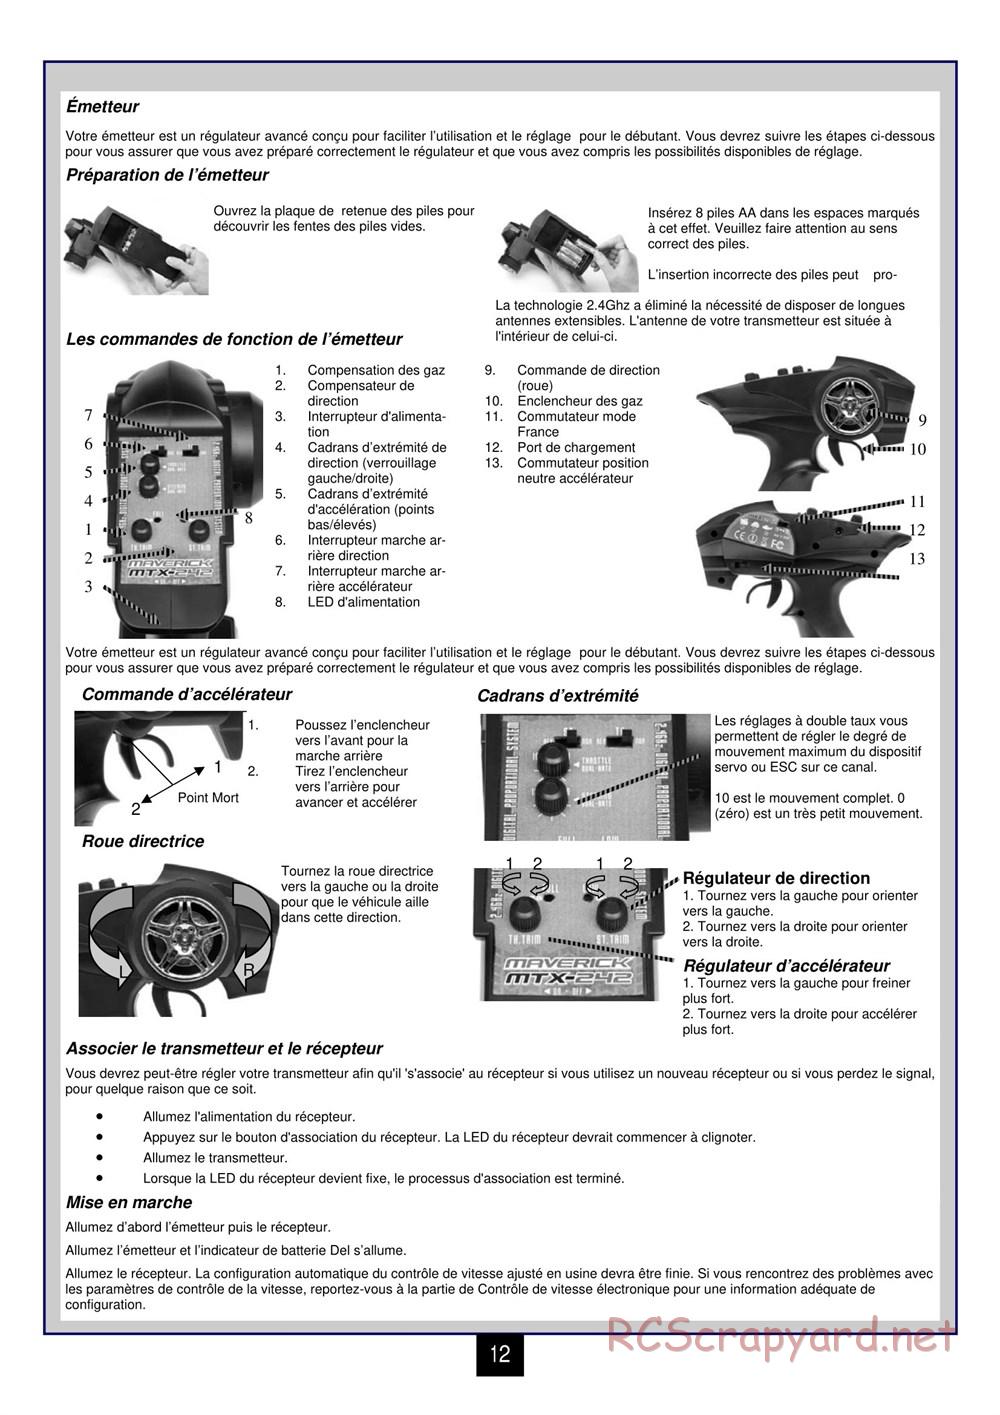 HPI - Maverick Blackout ST - Manual - Page 13